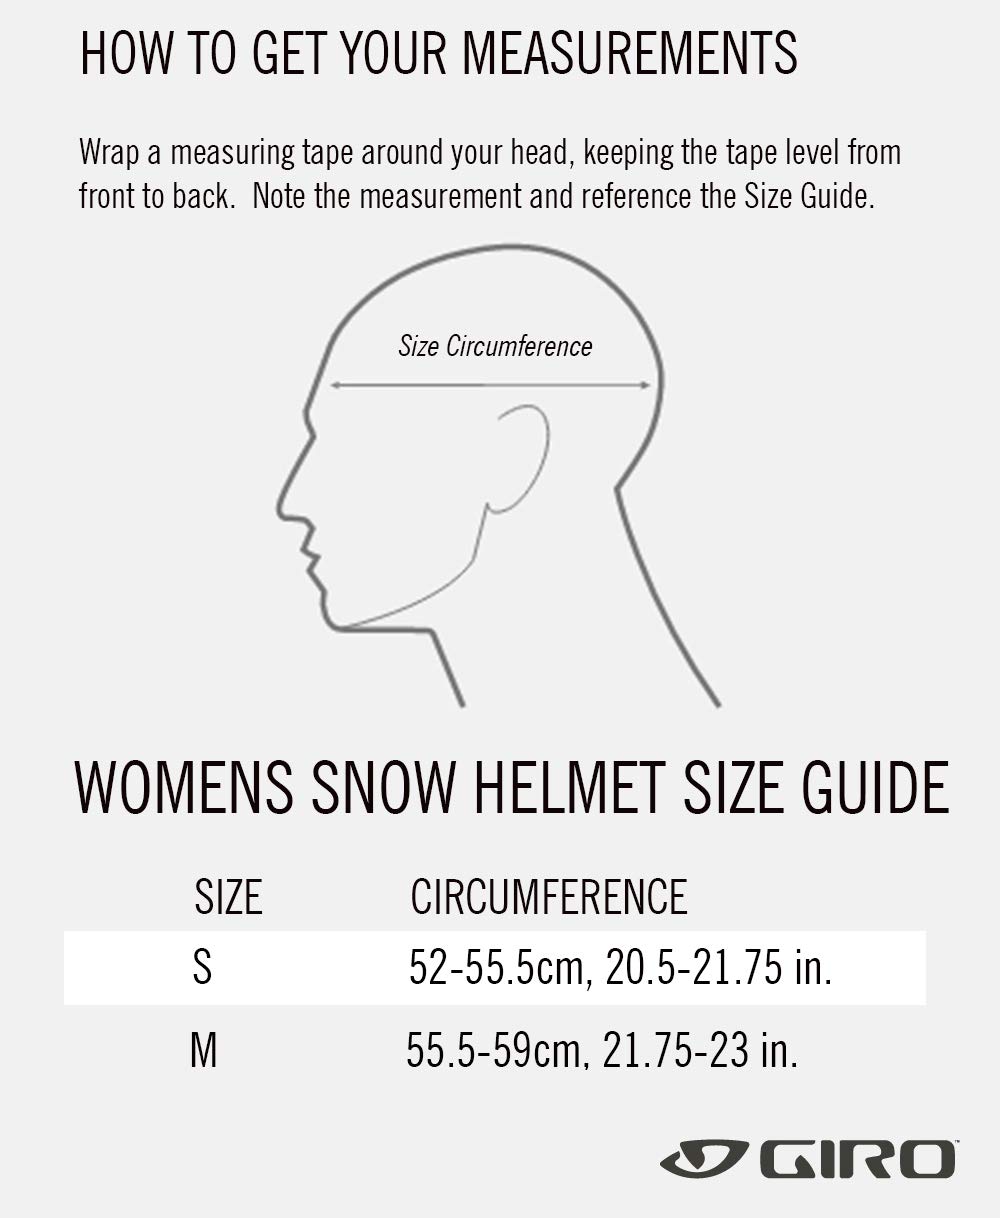 Giro Avera MIPS Asian Fit Ski Helmet - Snowboard Helmet for Women & Youth - Matte White - Size M (55.5-59cm)